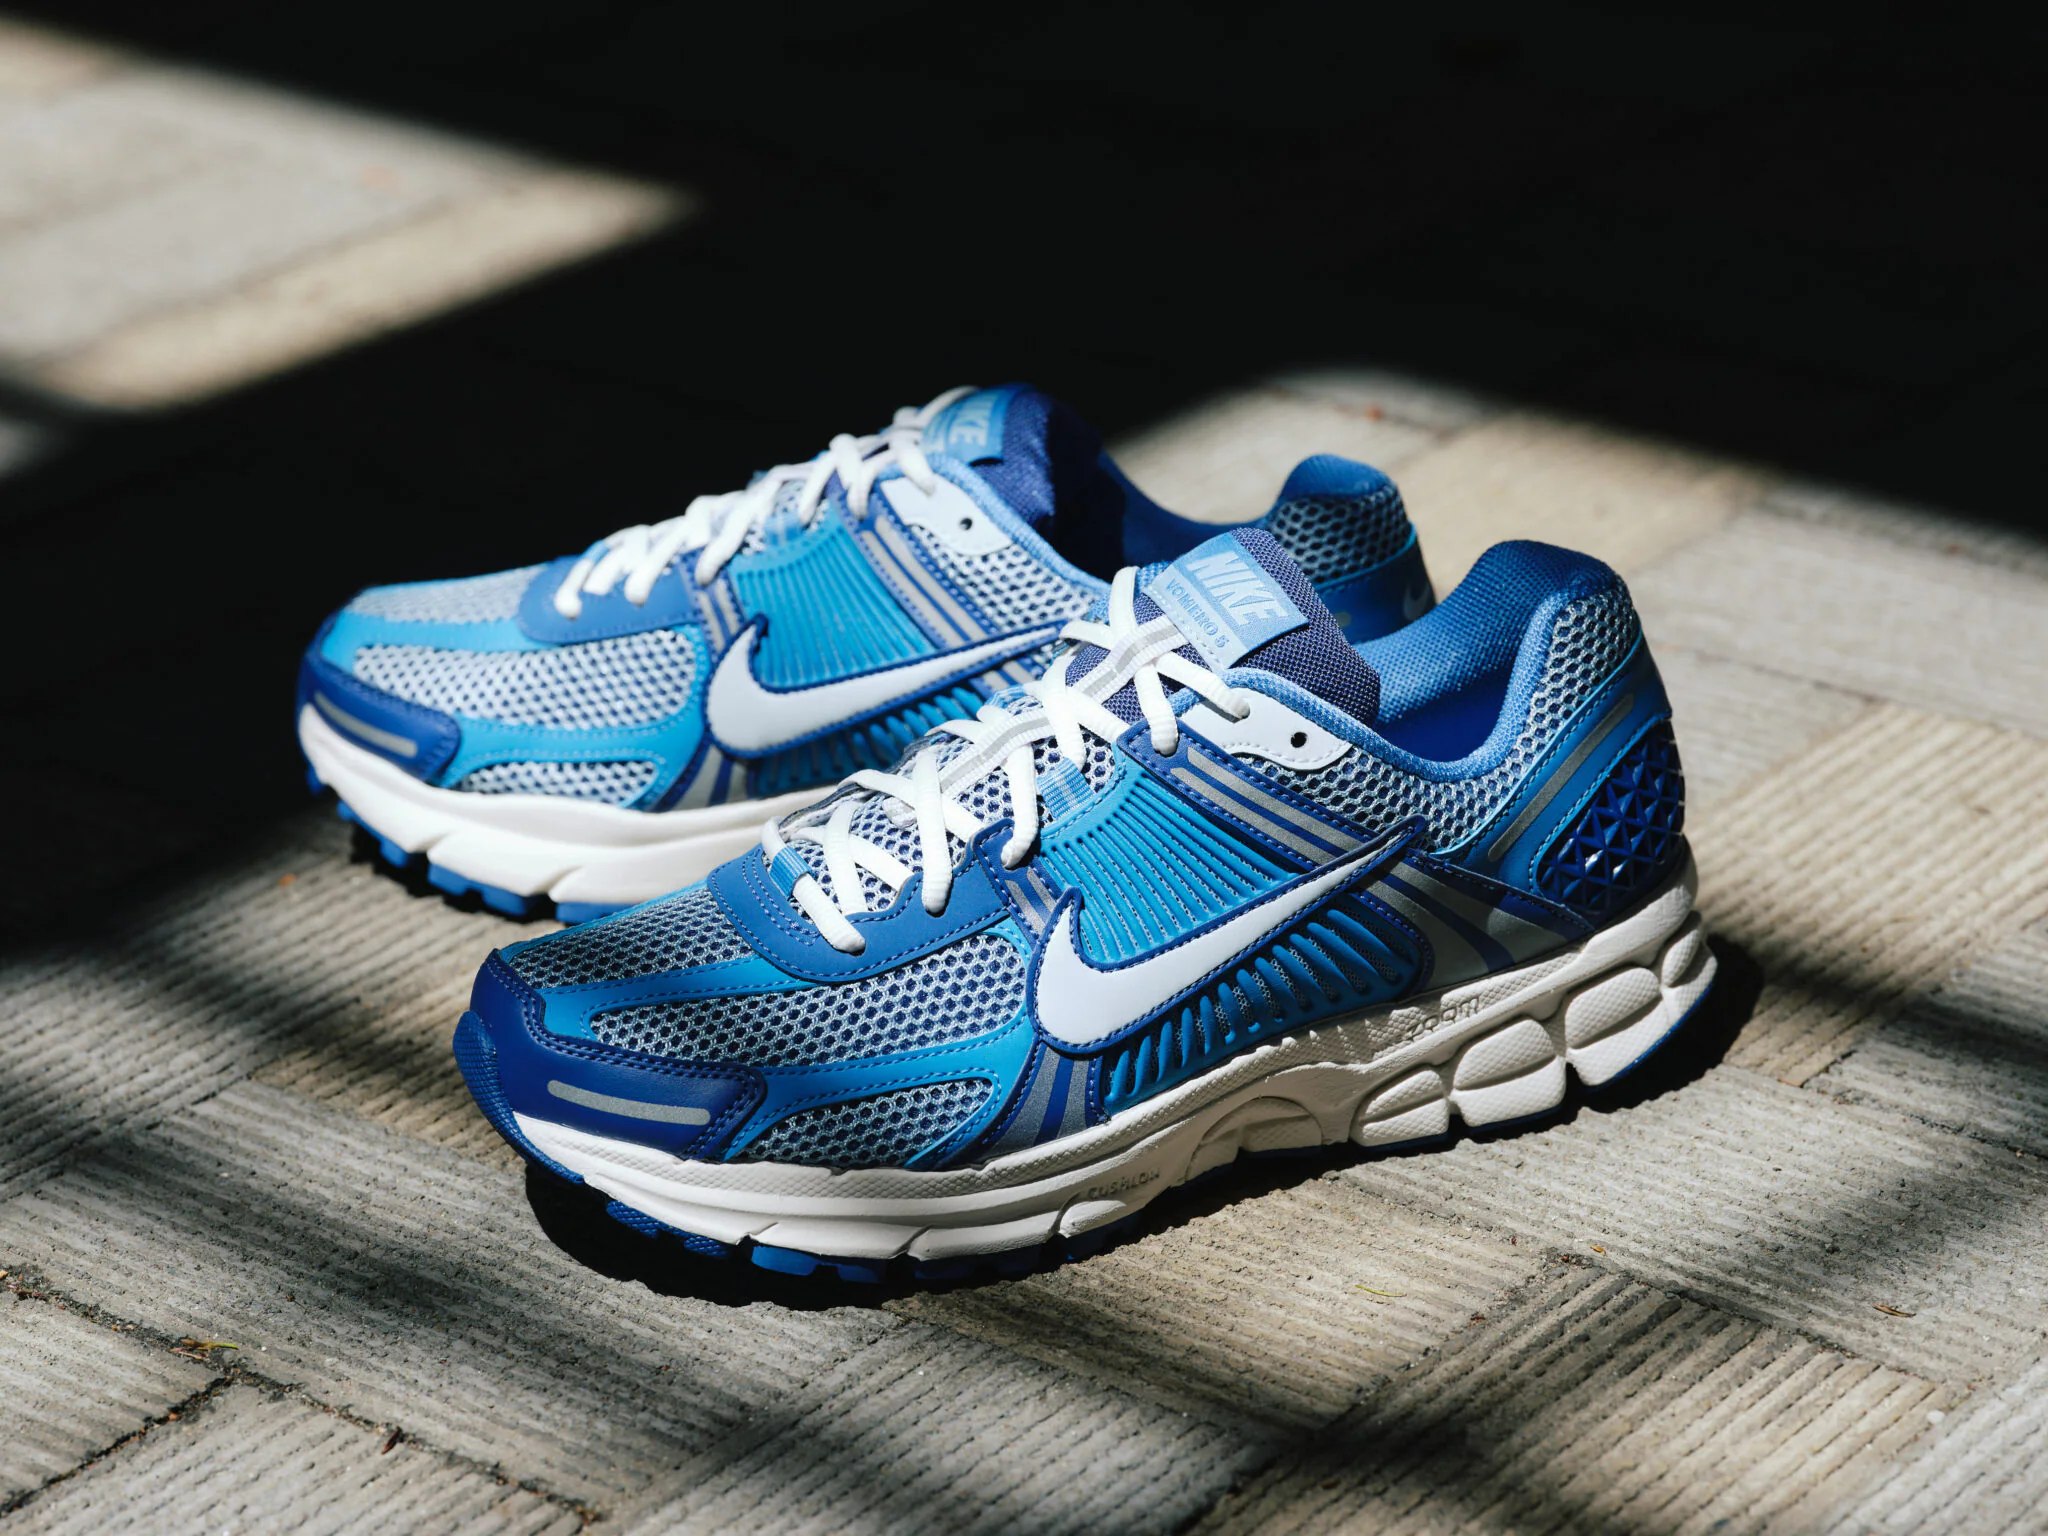 GIÀY CASUAL CHÍNH HÃNG - Nike Cools Down The Zoom Vomero 5 With “Worn Blue” - FB9149-400